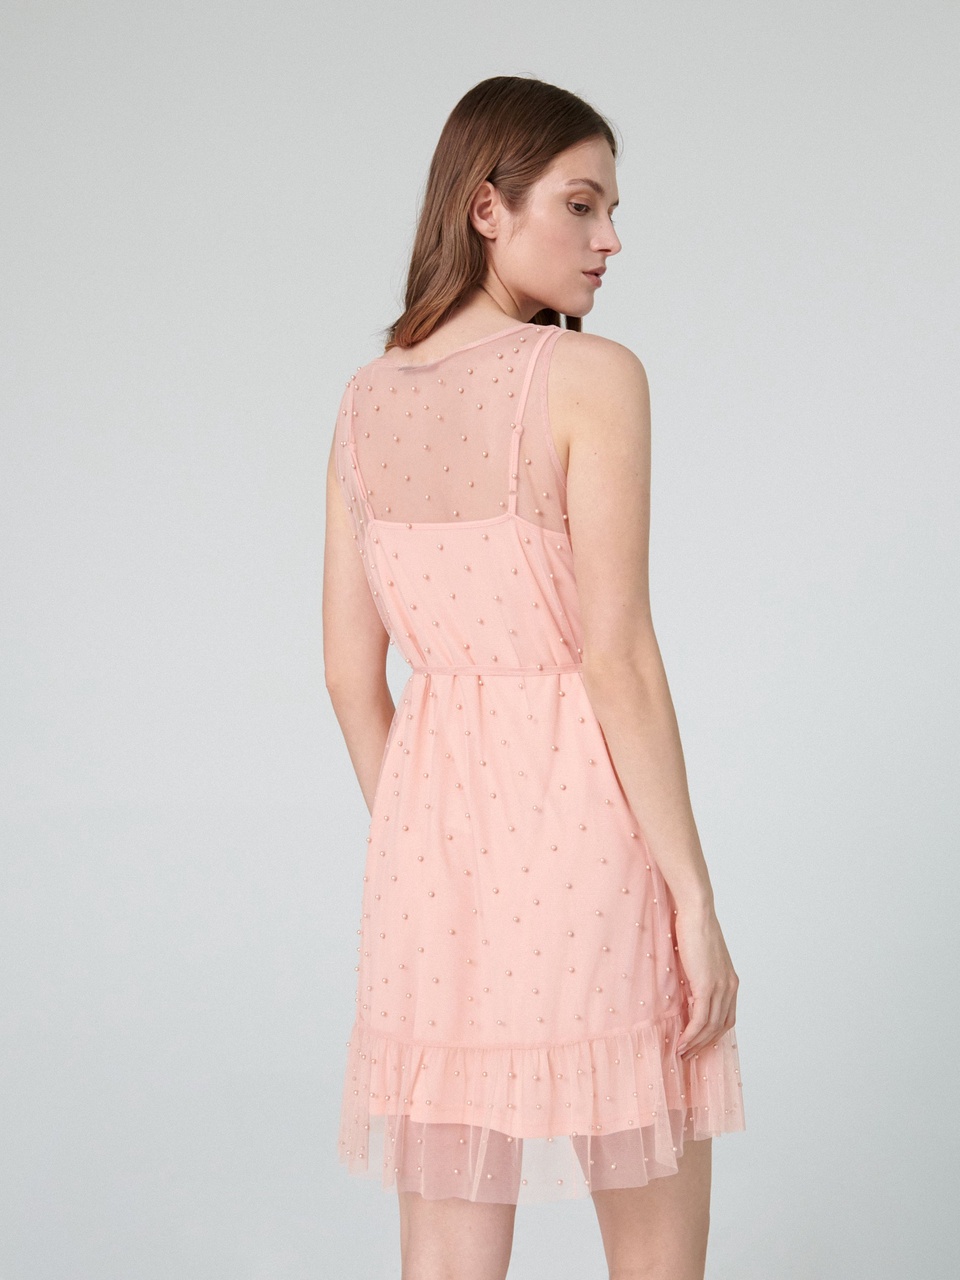 Мини-платье с декоративными заклепками - 399 ₽, заказать онлайн.